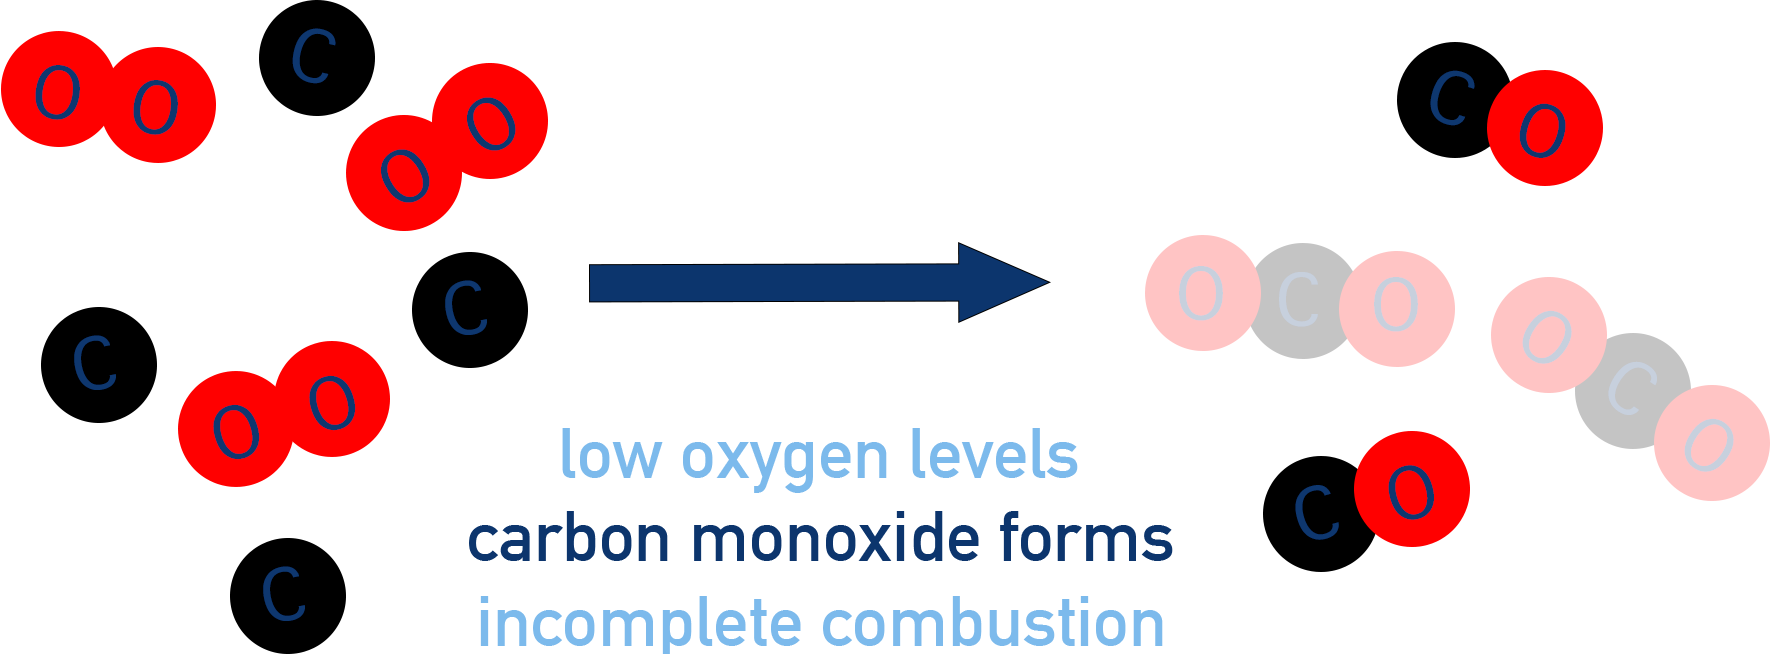 Carbon monoxide incomplete combustion low oxygen levels a-level chemistry